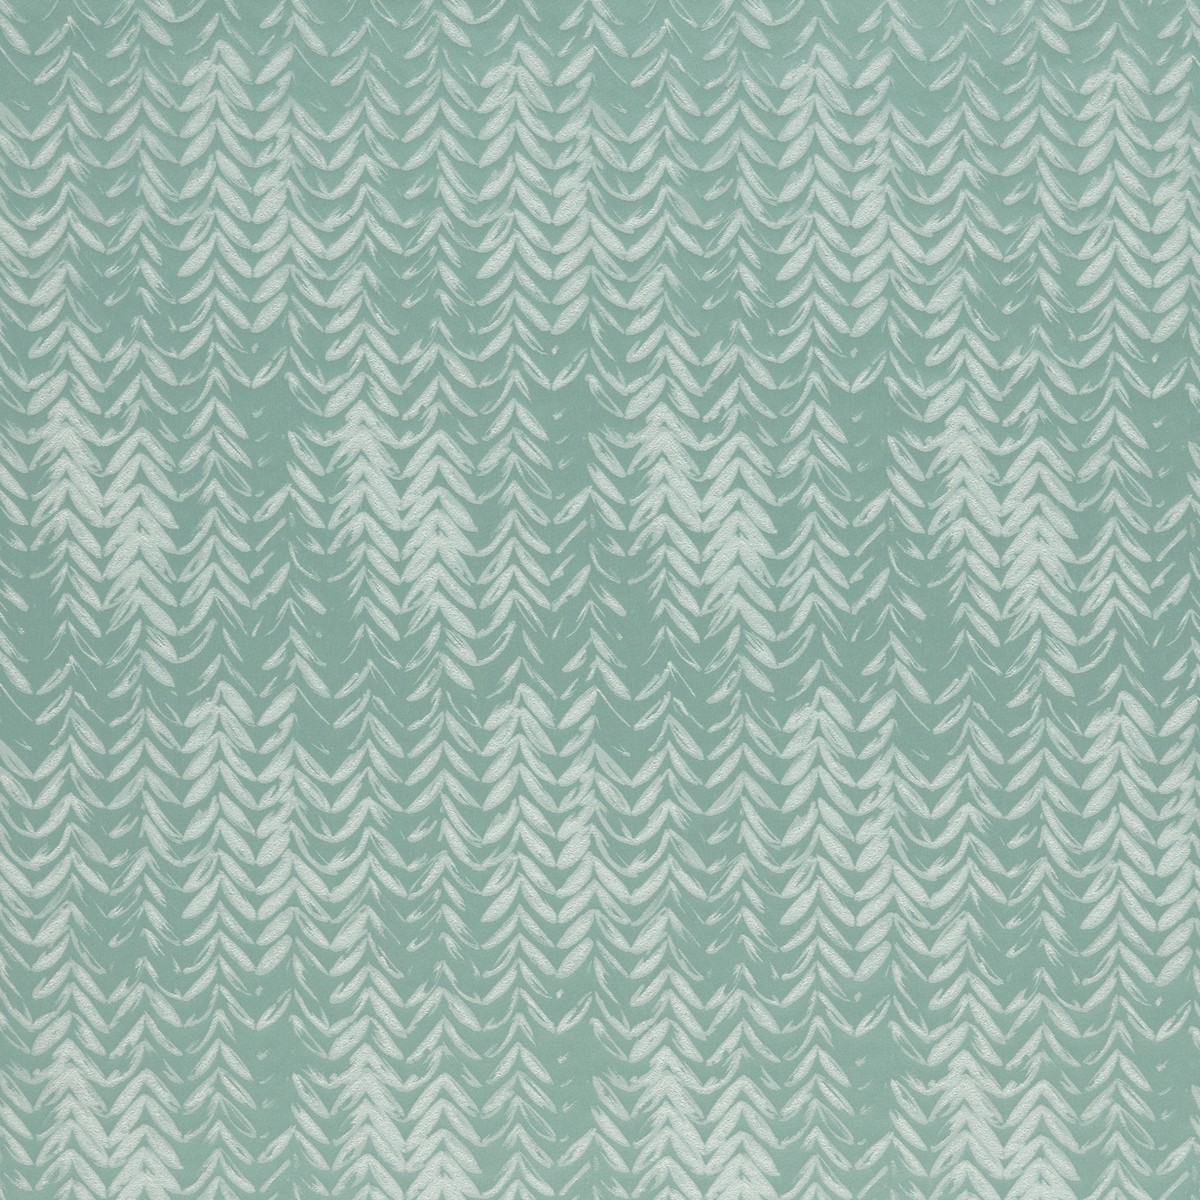 Fortex Spa Fabric by Ashley Wilde